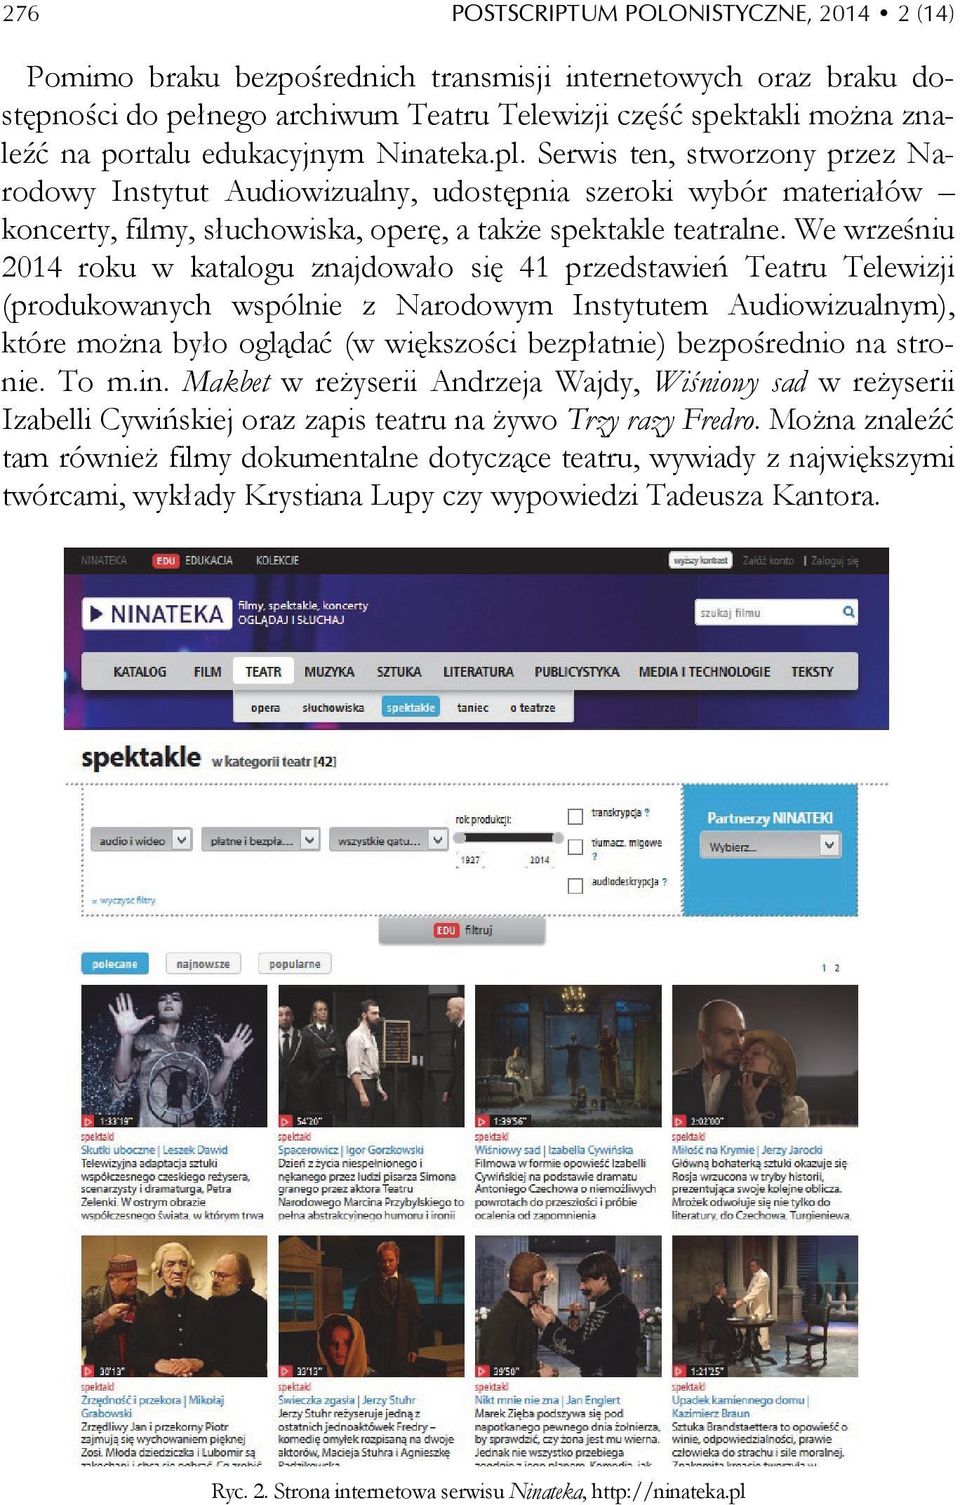 We wrześniu 2014 roku w katalogu znajdowało się 41 przedstawień Teatru Telewizji (produkowanych wspólnie z Narodowym Instytutem Audiowizualnym), które można było oglądać (w większości bezpłatnie)